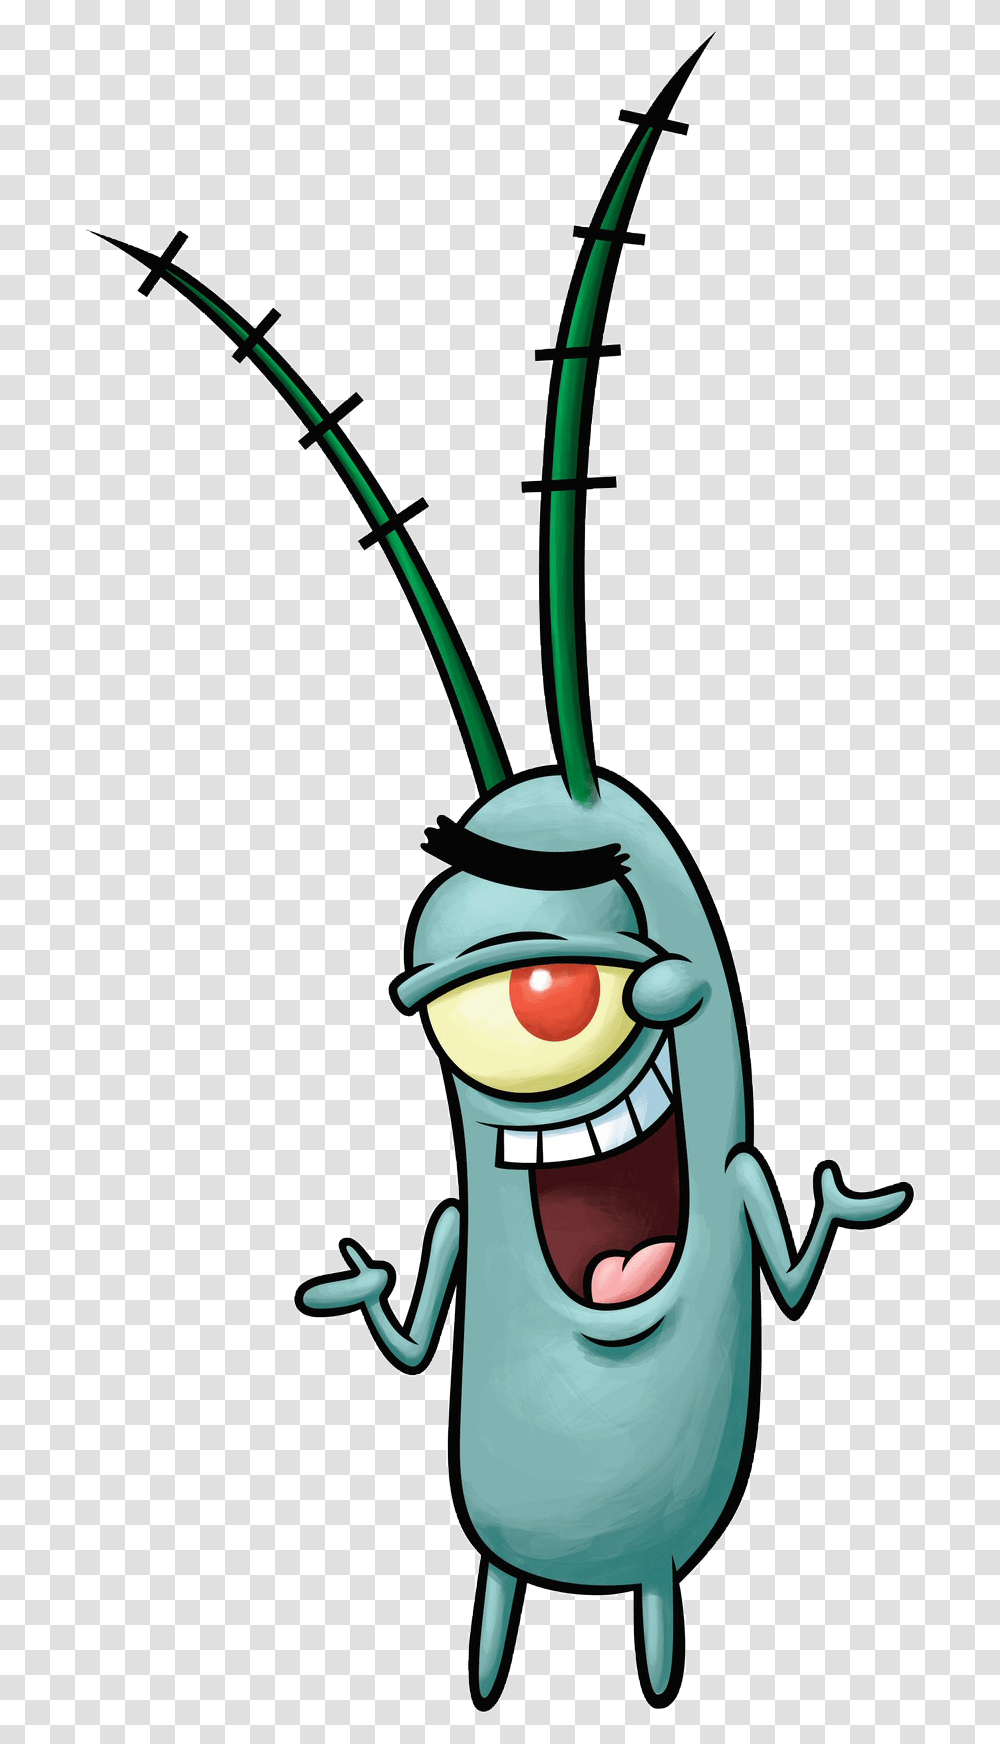 Plankton Spongebob Clipart Personnage De Bob L Ponge, Animal, Plant, Insect, Invertebrate Transparent Png